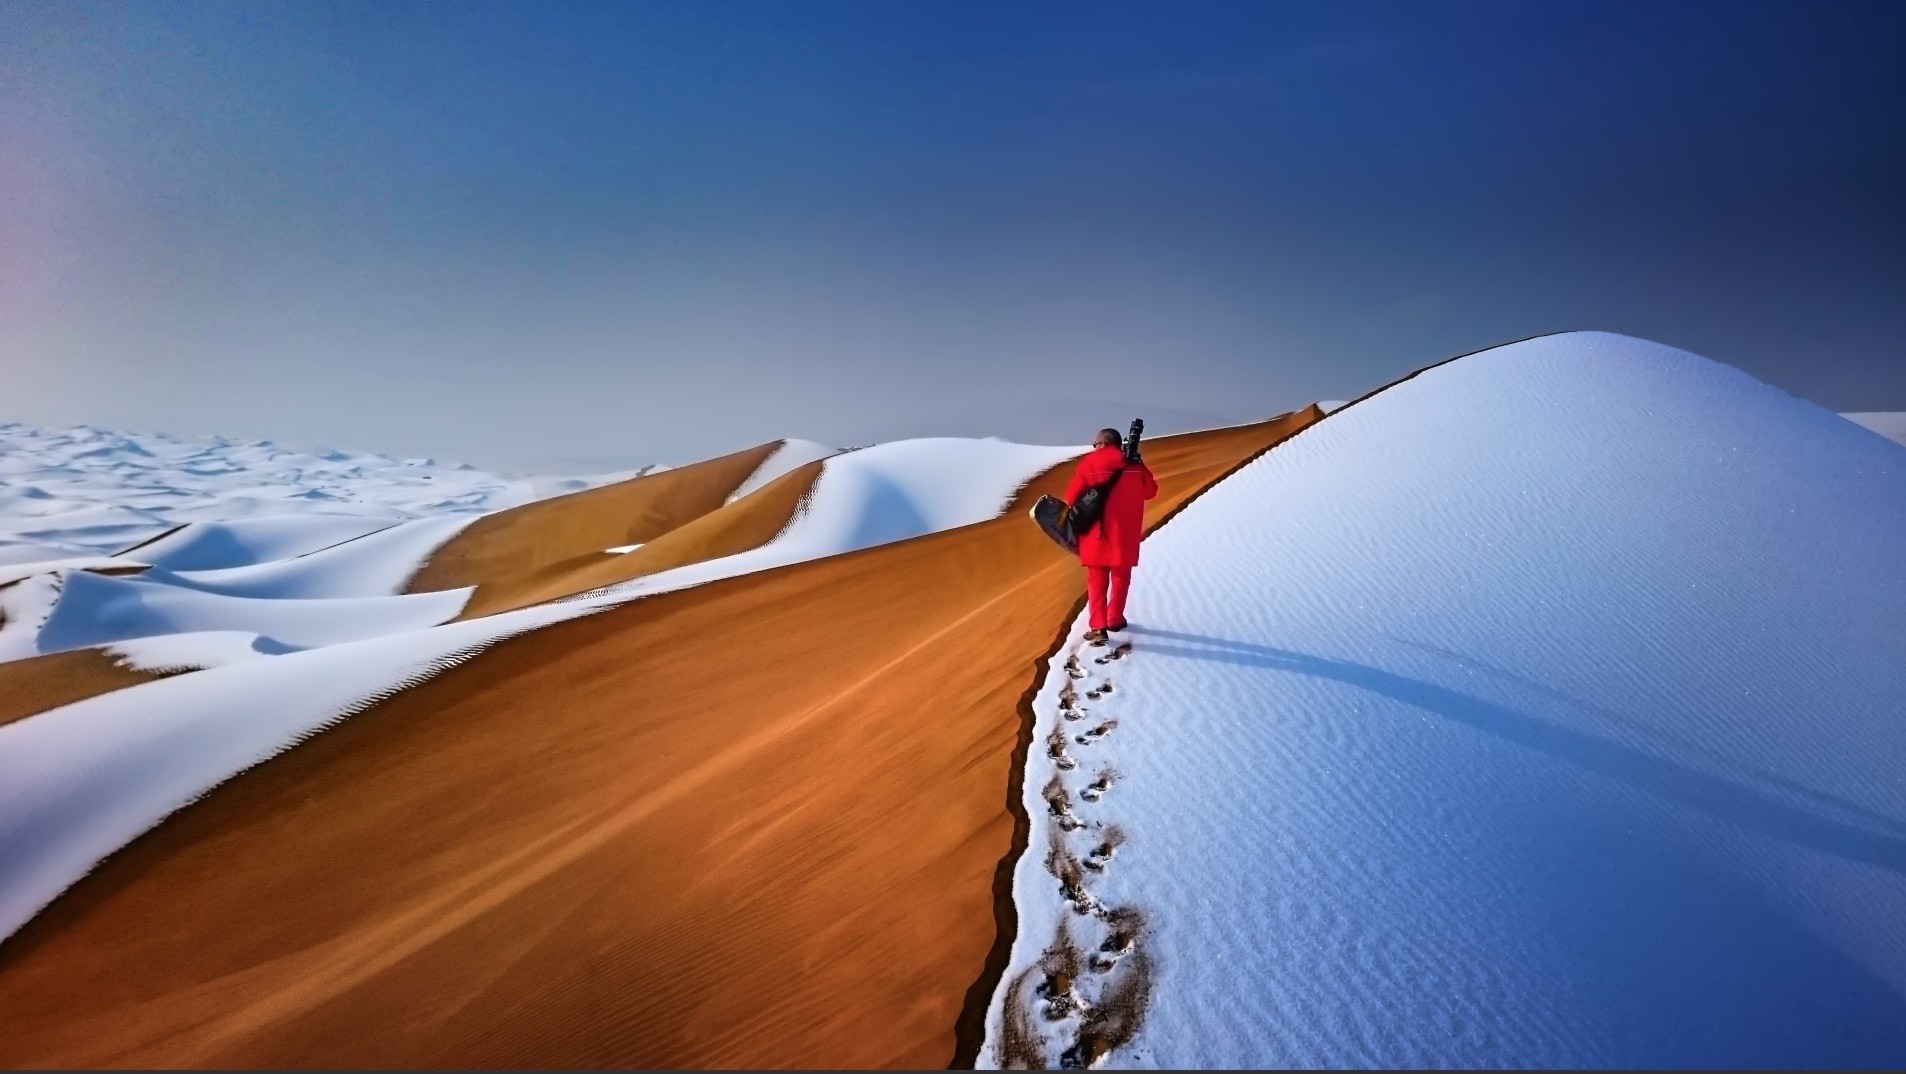 General 1906x1074 sand dunes snow men footprints nature landscape